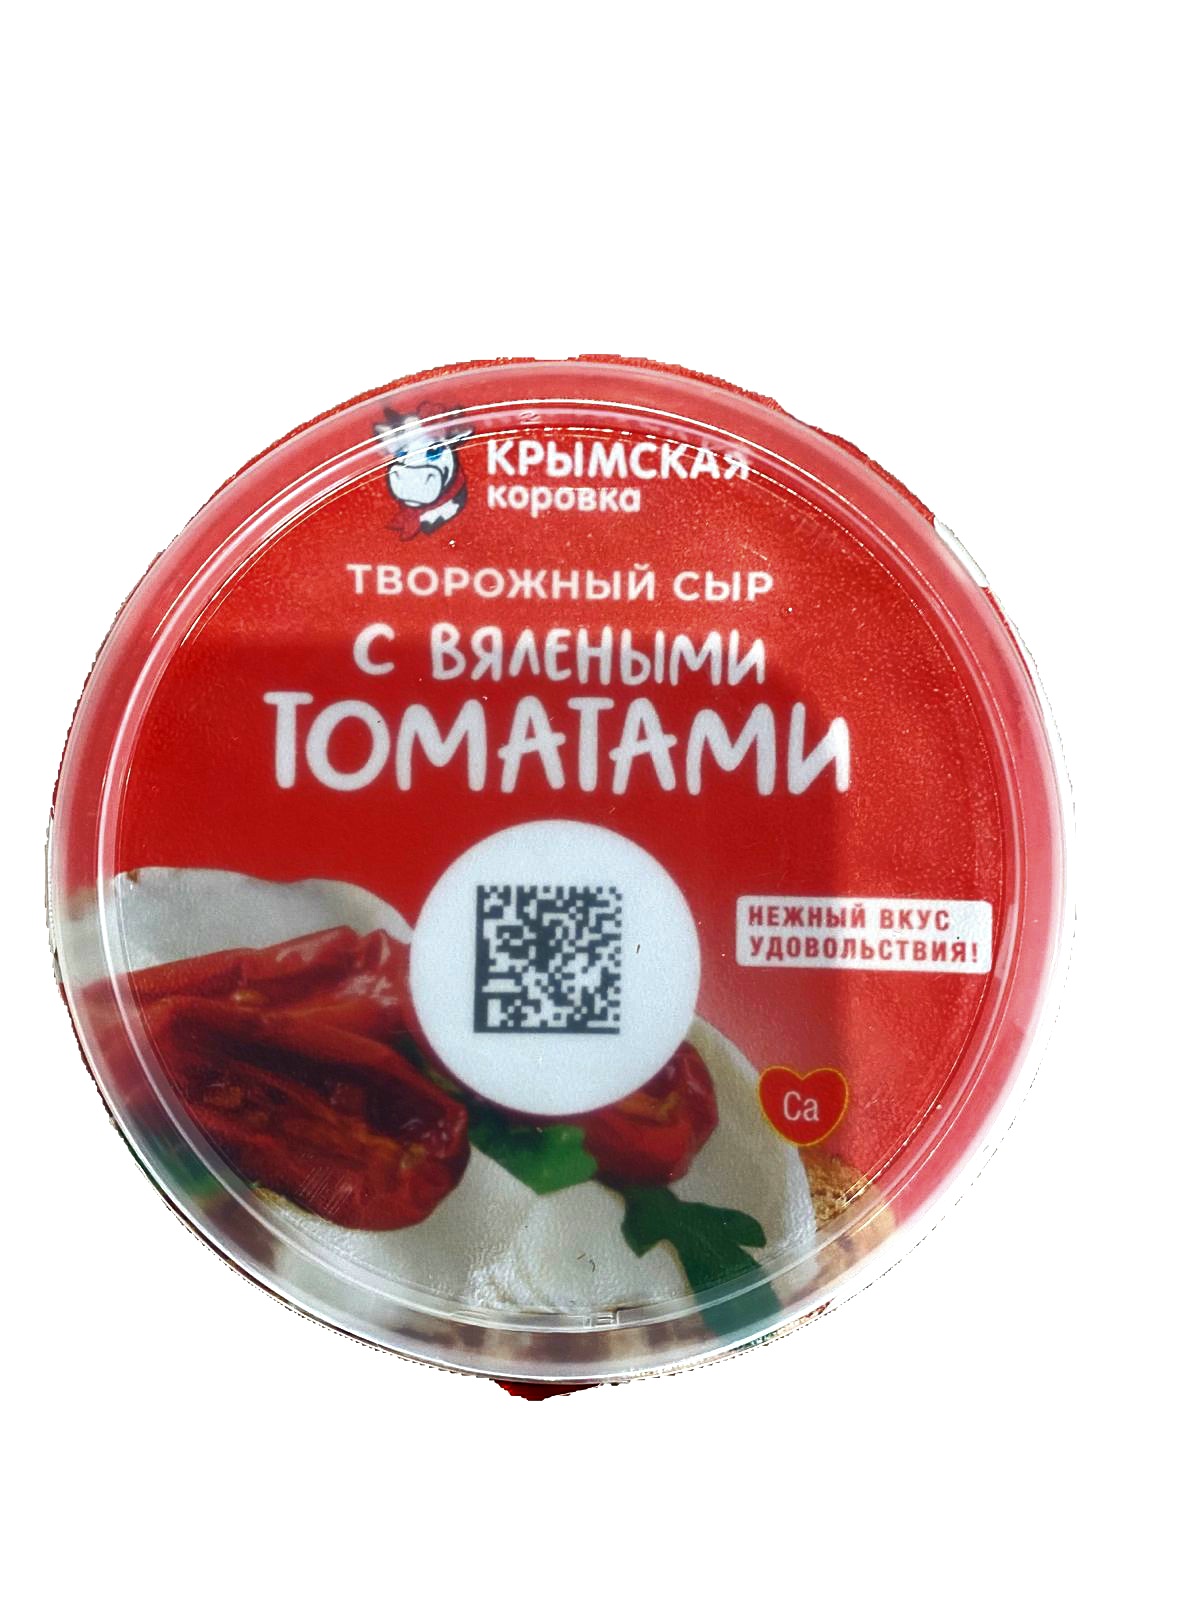 Сыр творожный сливочный "Вяленые томаты", 55%, фас. 140гр., ТМ "Крымская Коровка"